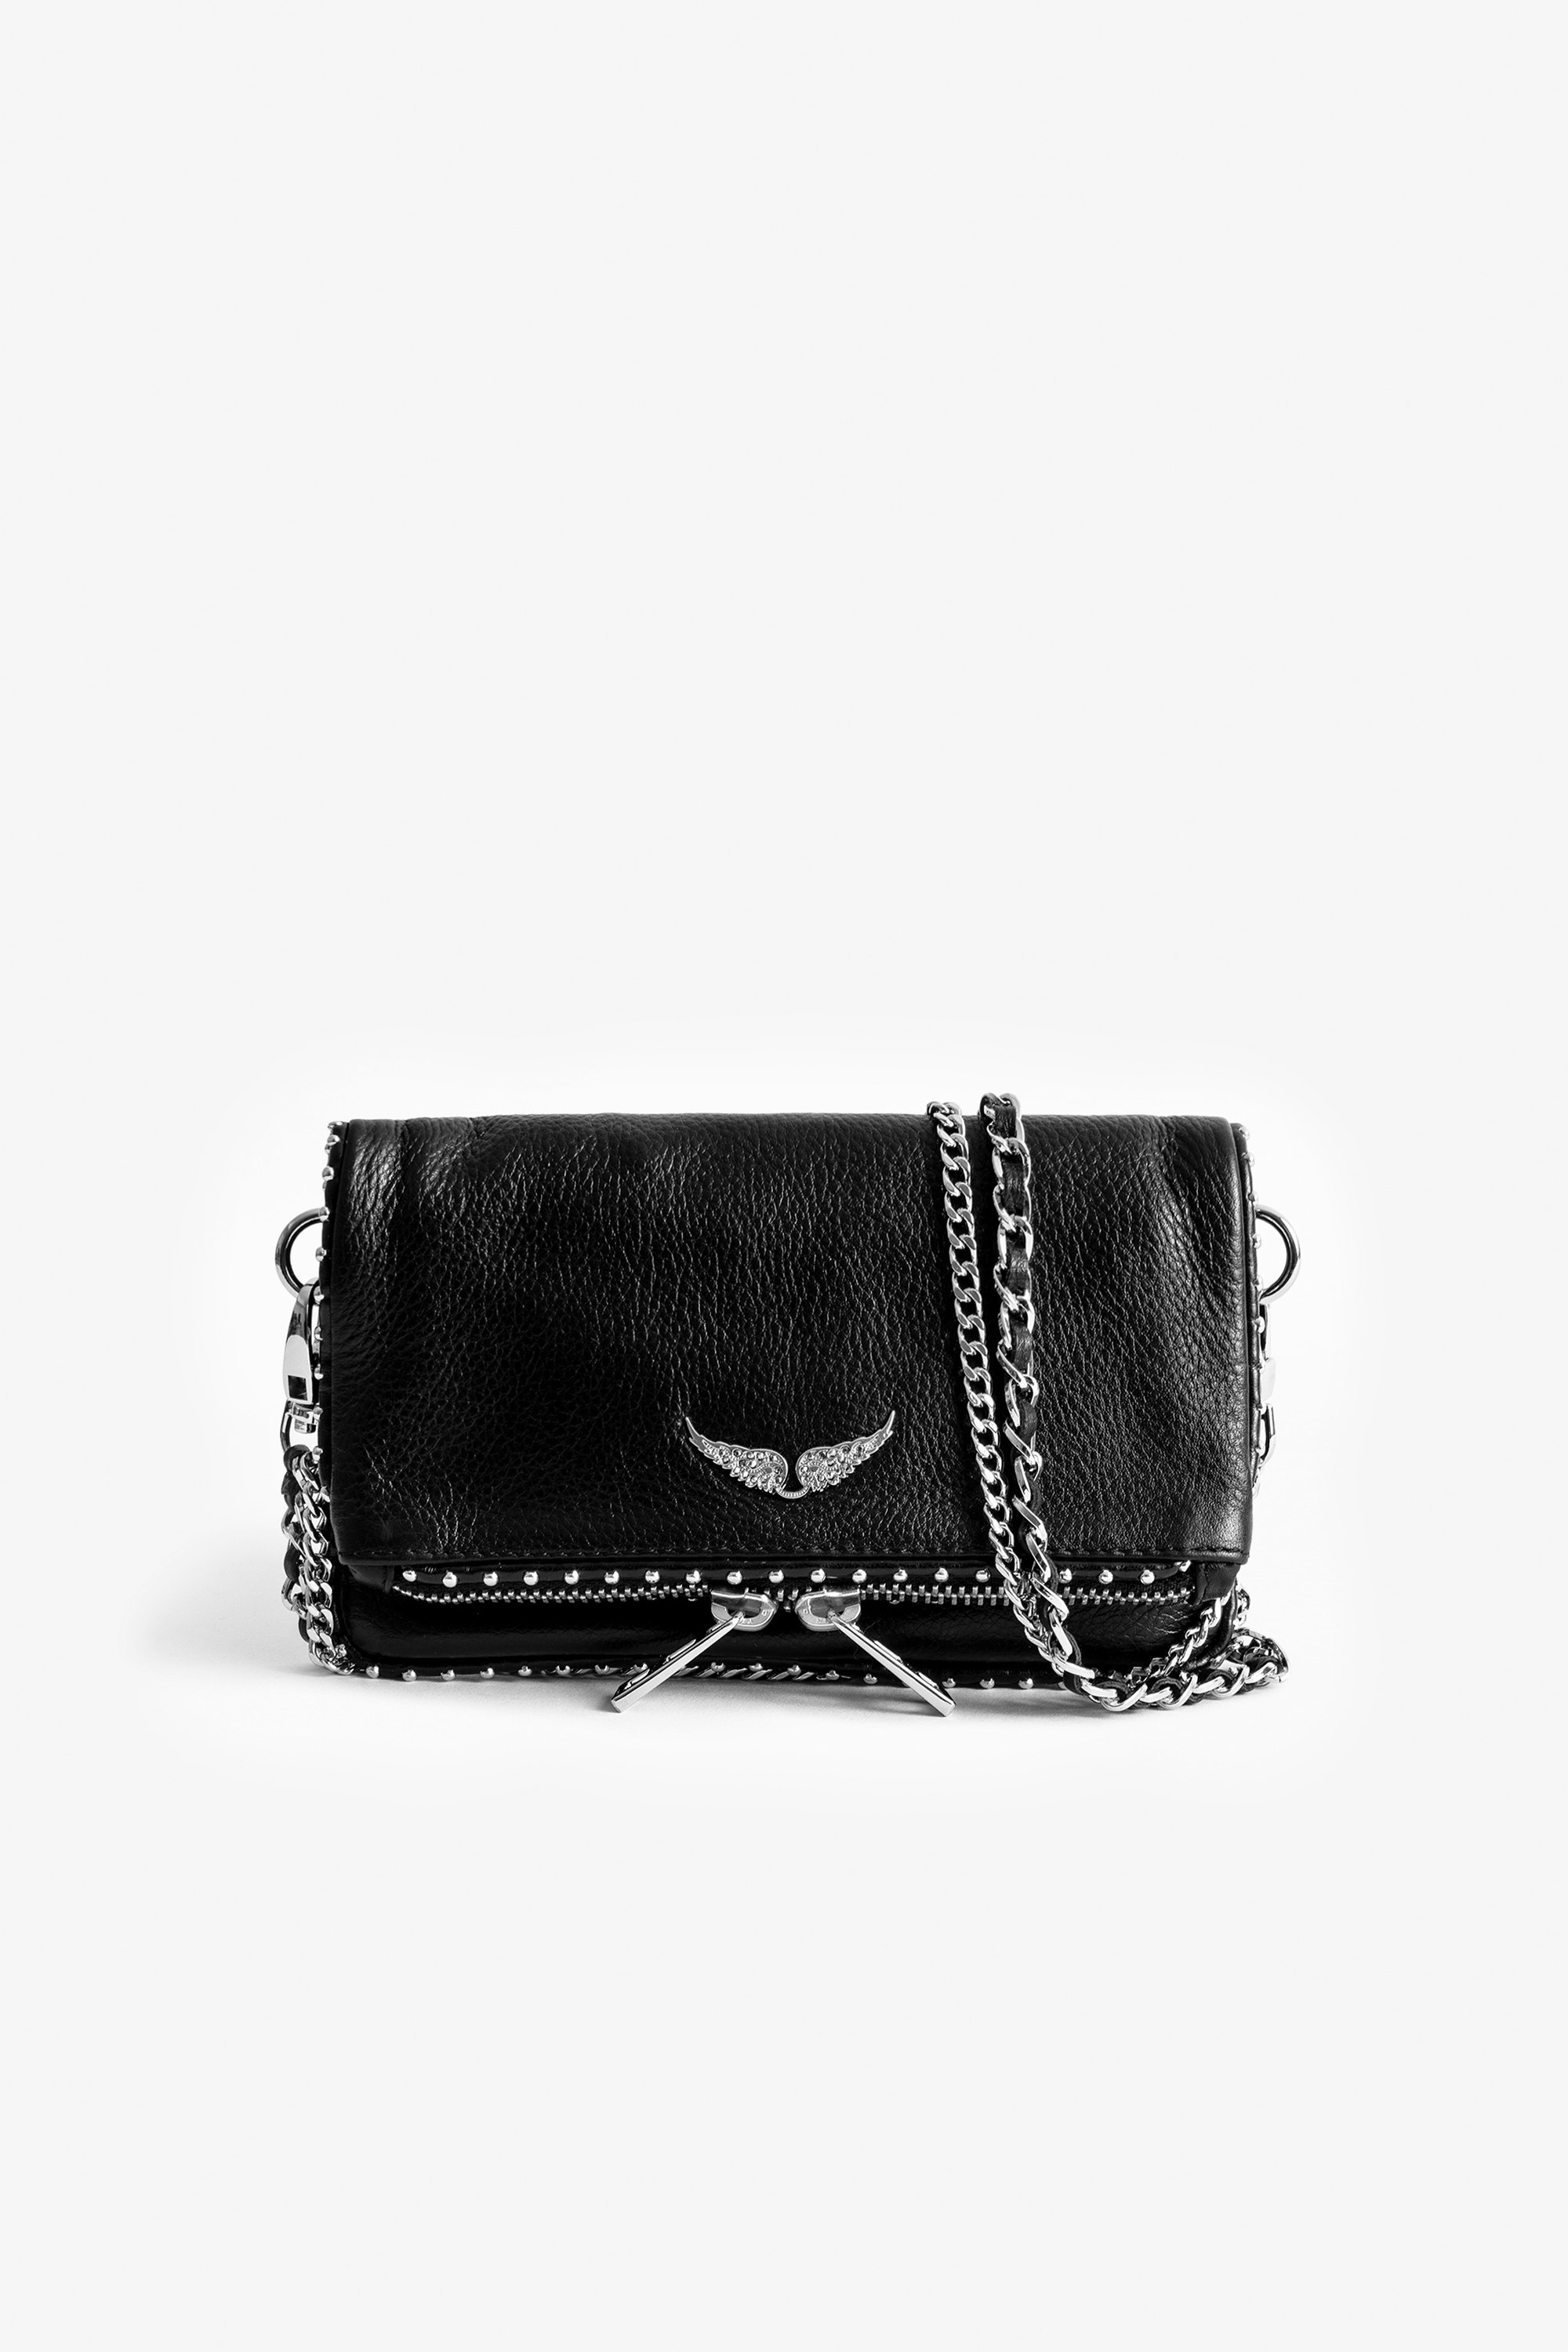 Bolso de mano Rock Nano Studs Emblemático bolso de mano Rock Nano negro de piel con tachuelas plateadas para mujer.